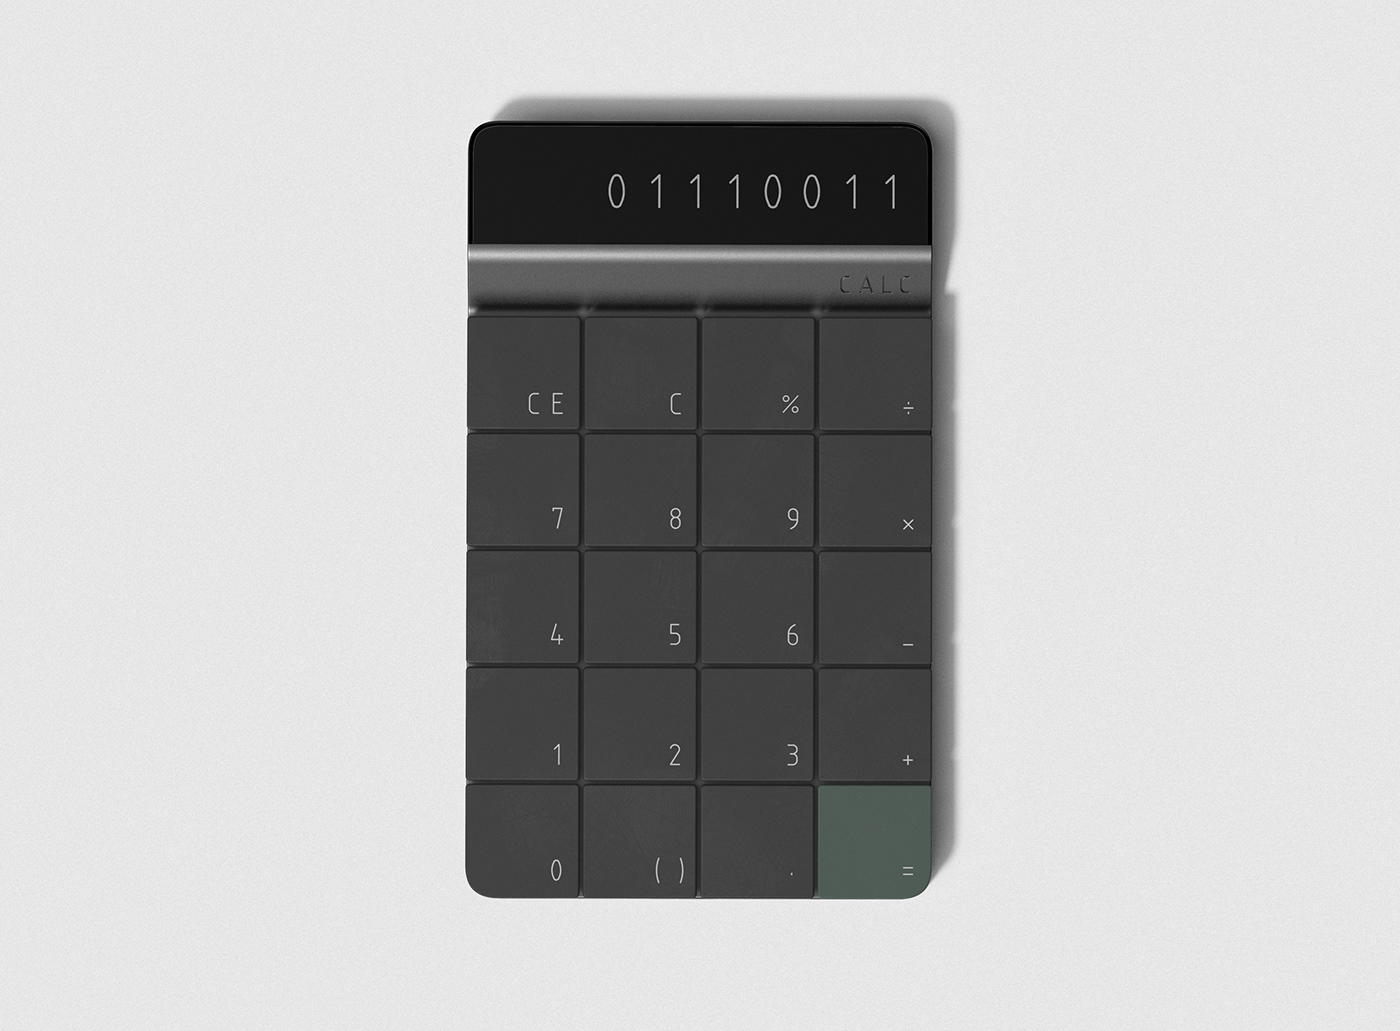 ID product design  cad Solidworks keyshot Render render weekly calculator industrial design  design